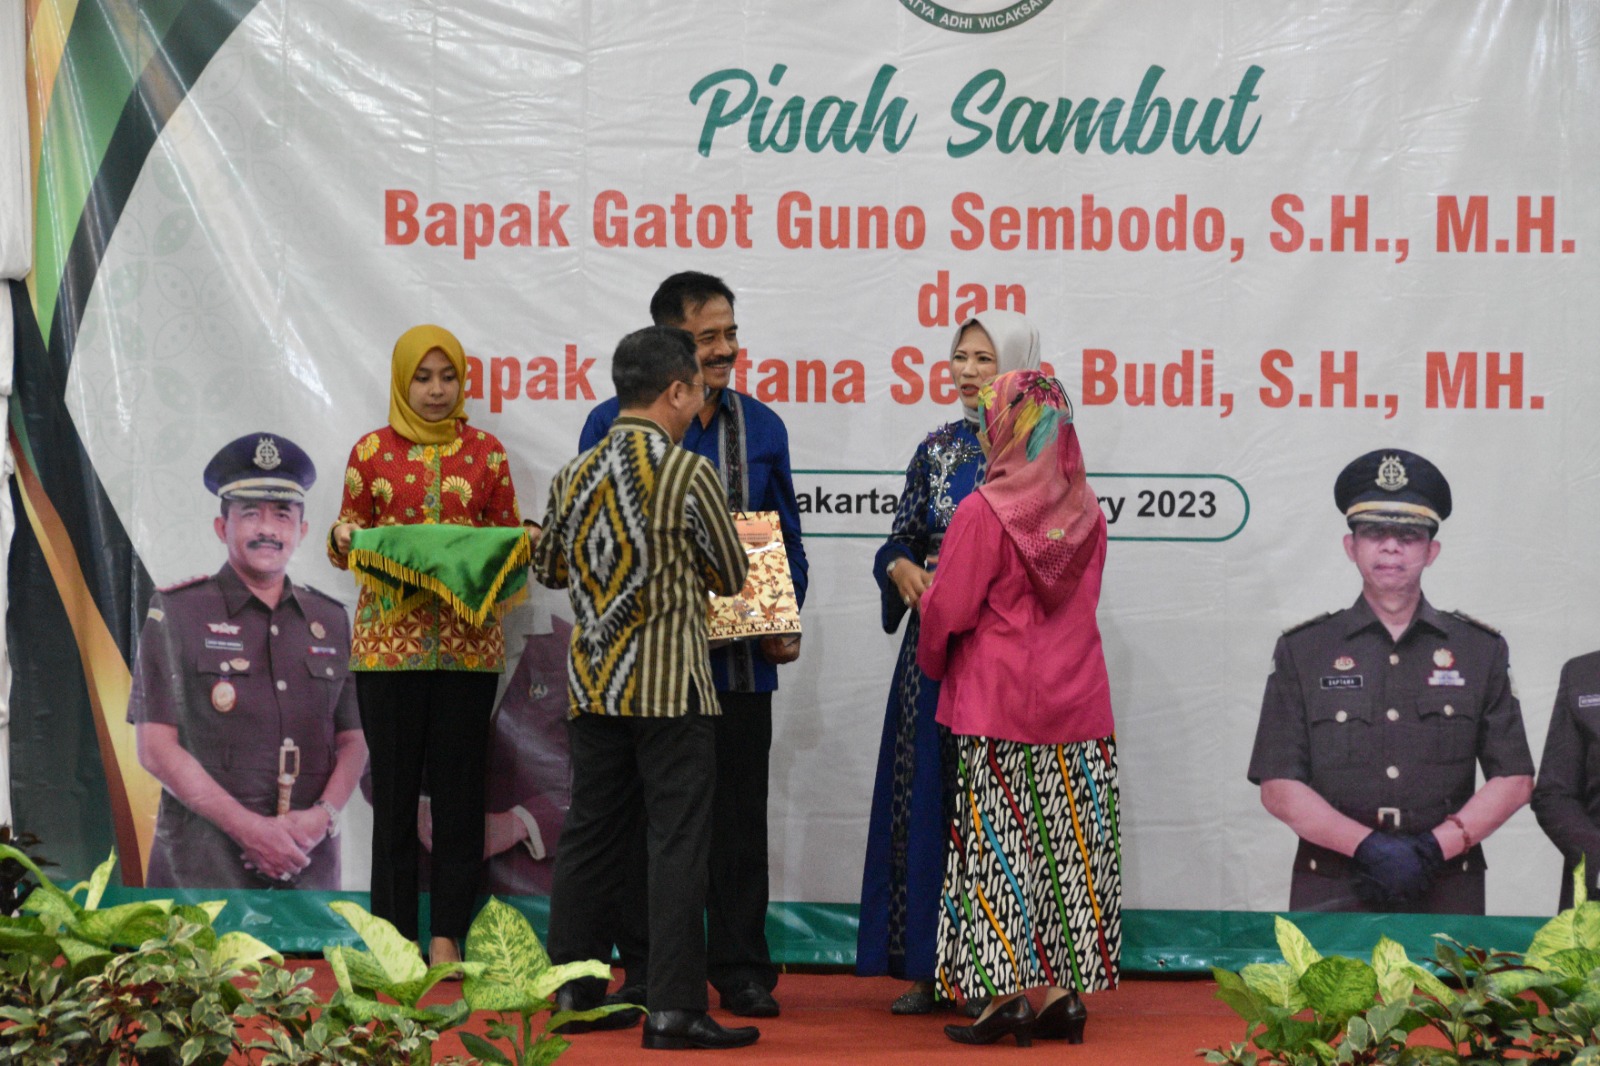 Ketua Pengadilan Negeri Yogyakarta Menghadiri Pisah Sambut Kepala Kejaksaan Negeri Yogyakarta